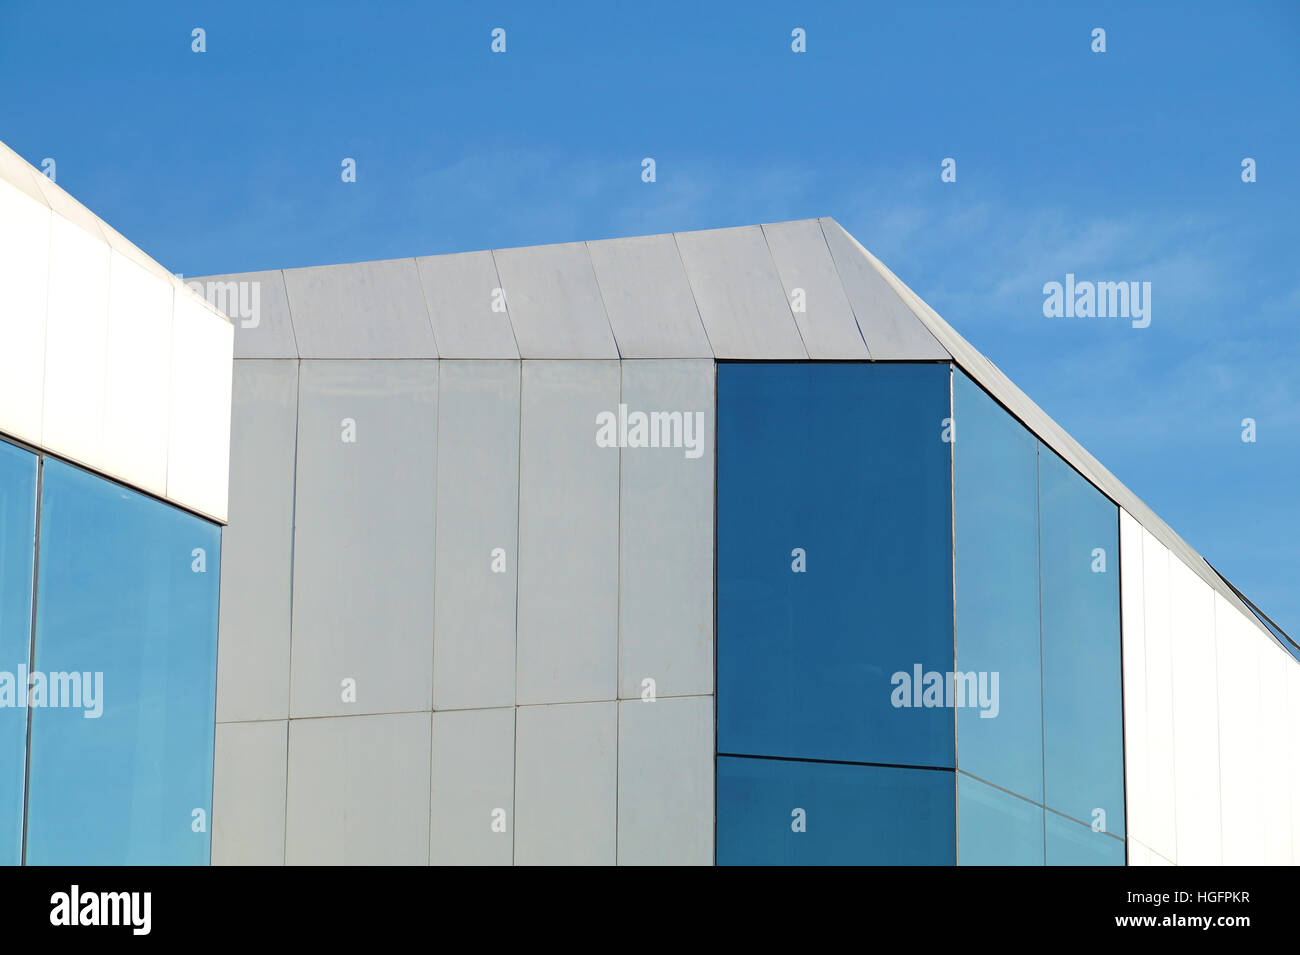 Détails de façade gris avec panneaux en aluminium portes et fenêtres de bâtiment industriel Banque D'Images